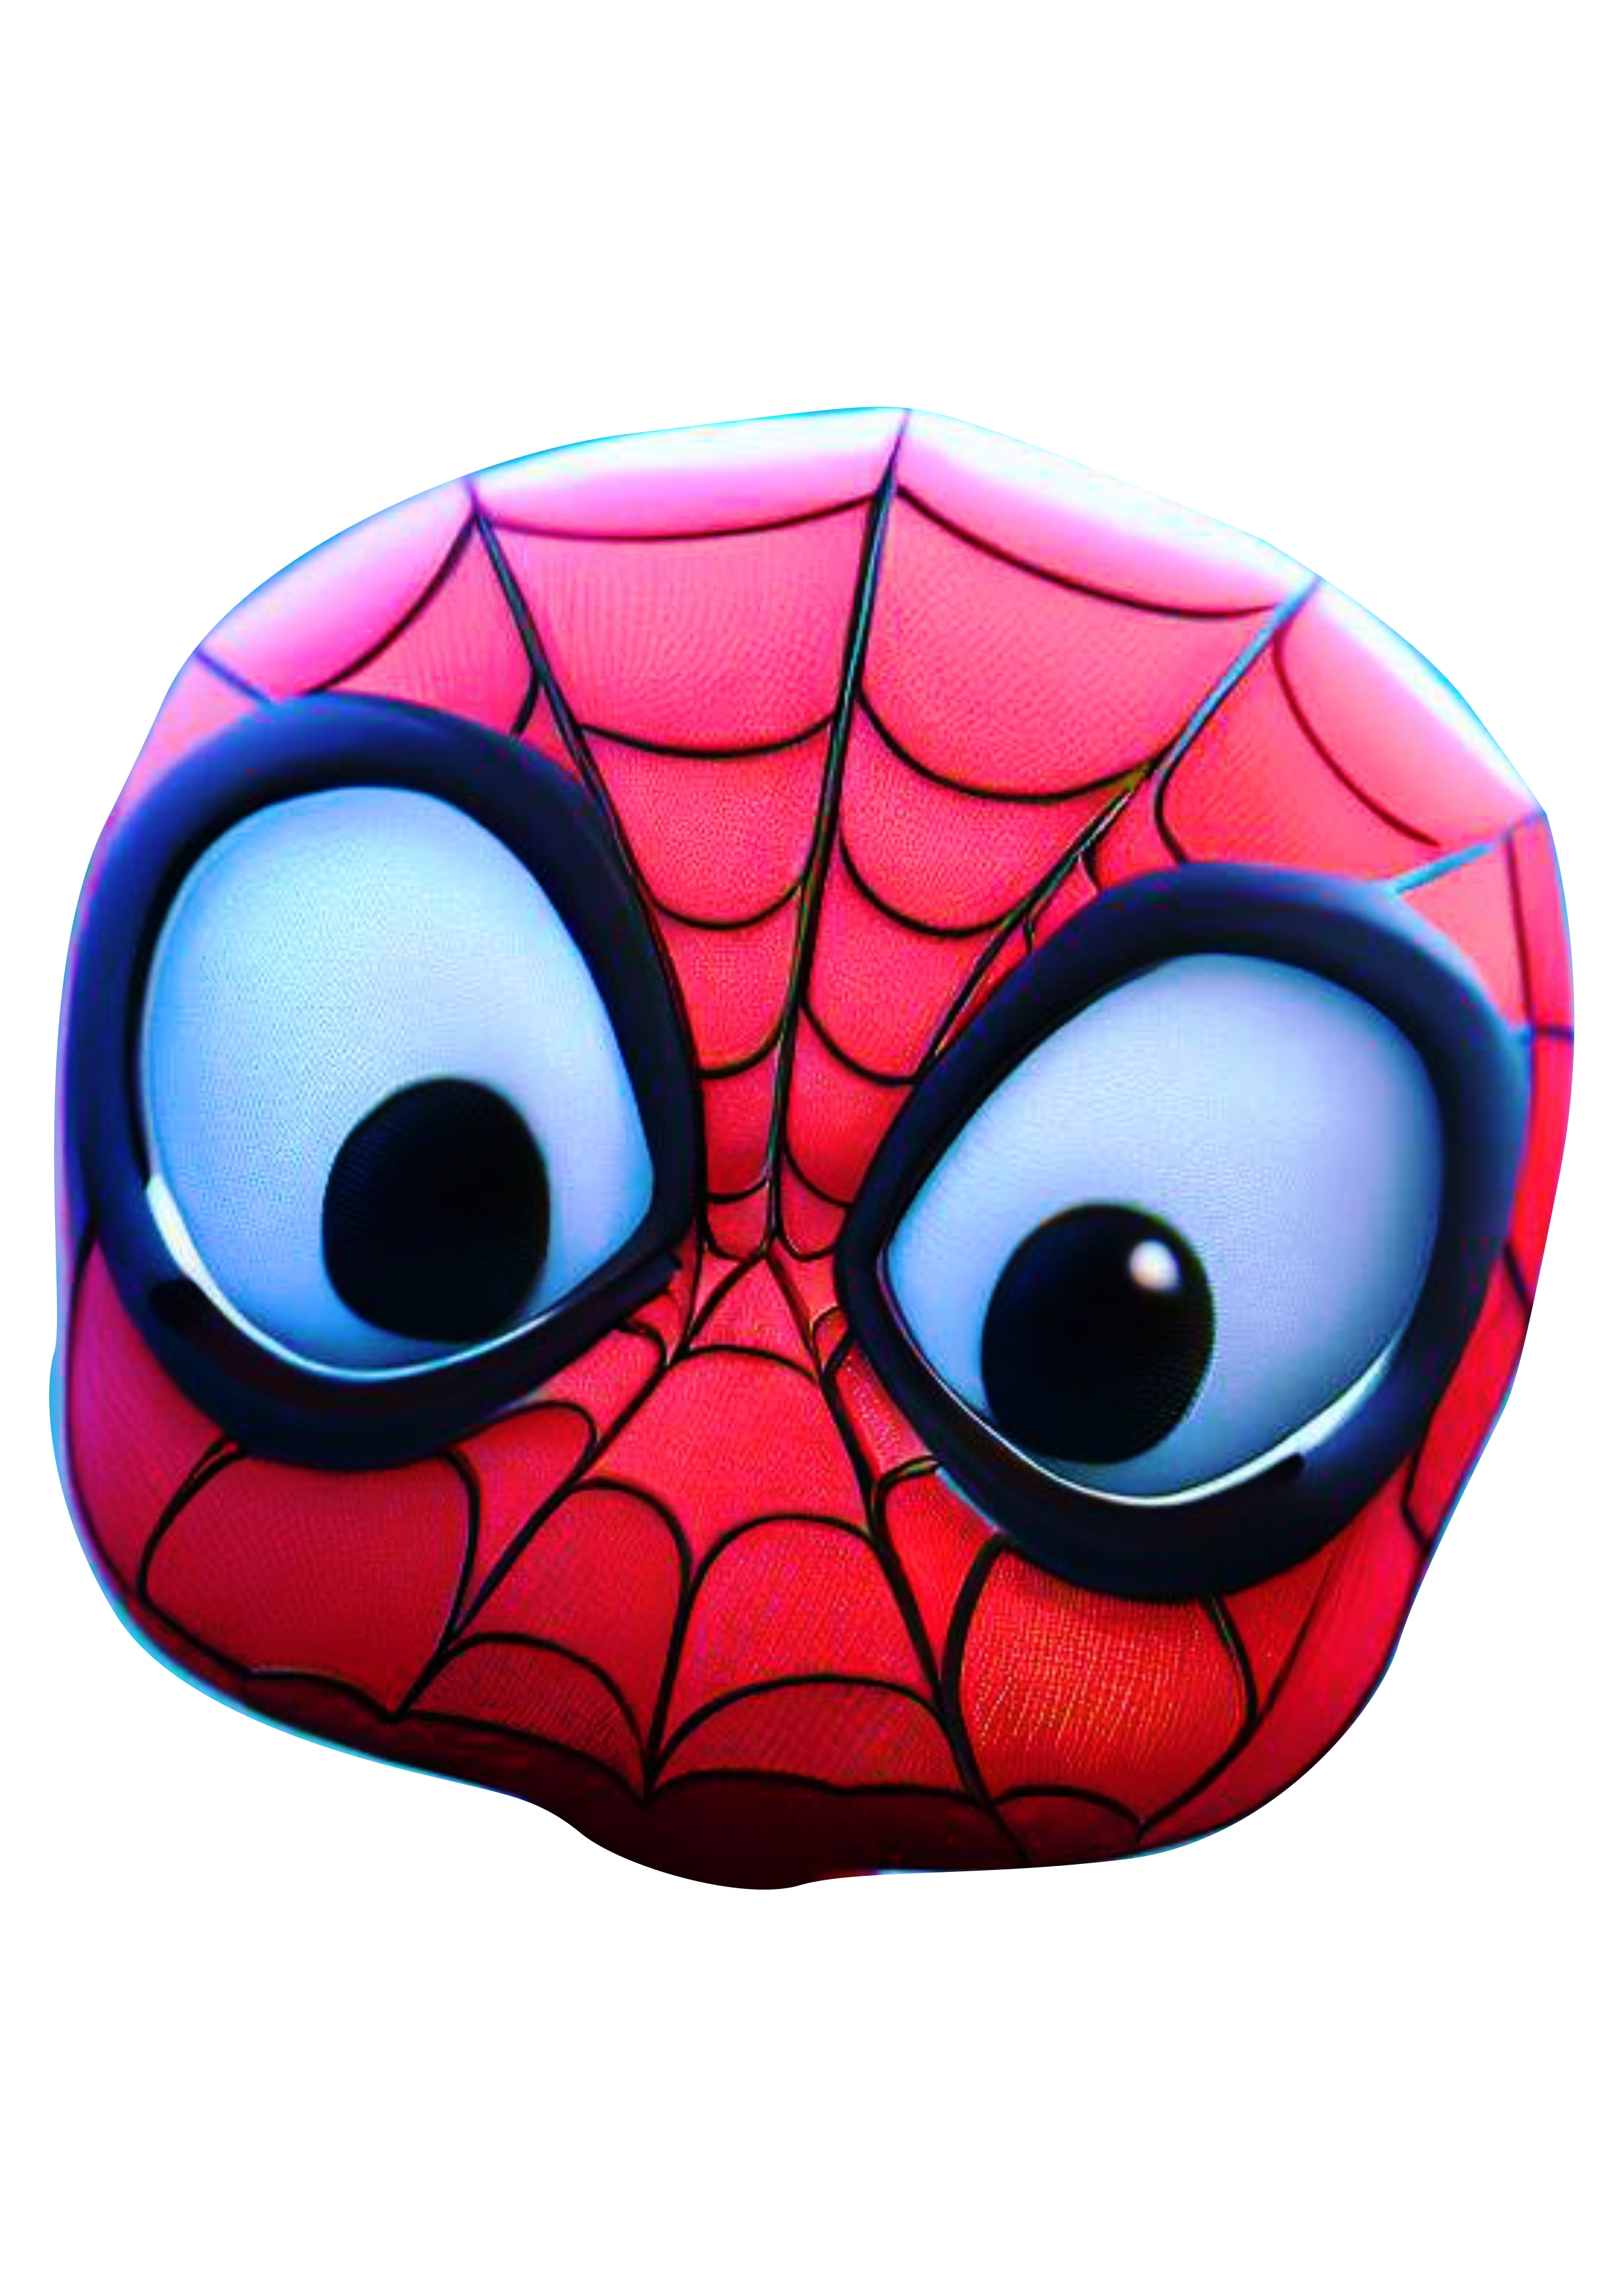 Homem aranha cute spider man ultimate baby máscara cabeça CGI computação gráfica animação Marvel universe Peter Parker design png